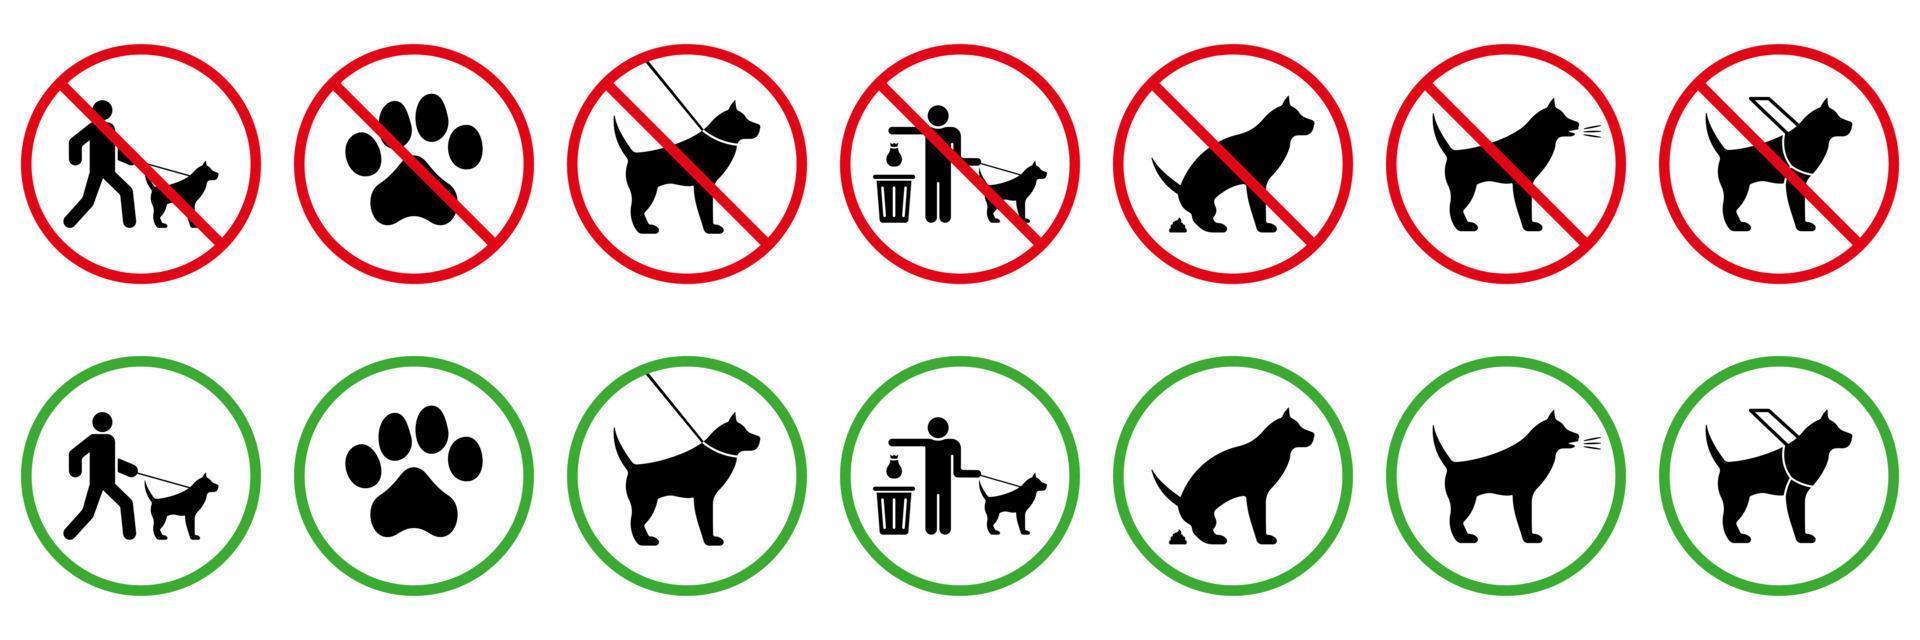 geen toegestaan dierentoiletbord. toestemming van de hond. park zone groen symbool. schoon na hondenpoep. verbod hond zwarte silhouet pictogramserie. verbieden huisdier ingang lopen pictogram.isolated vectorillustratie. vector